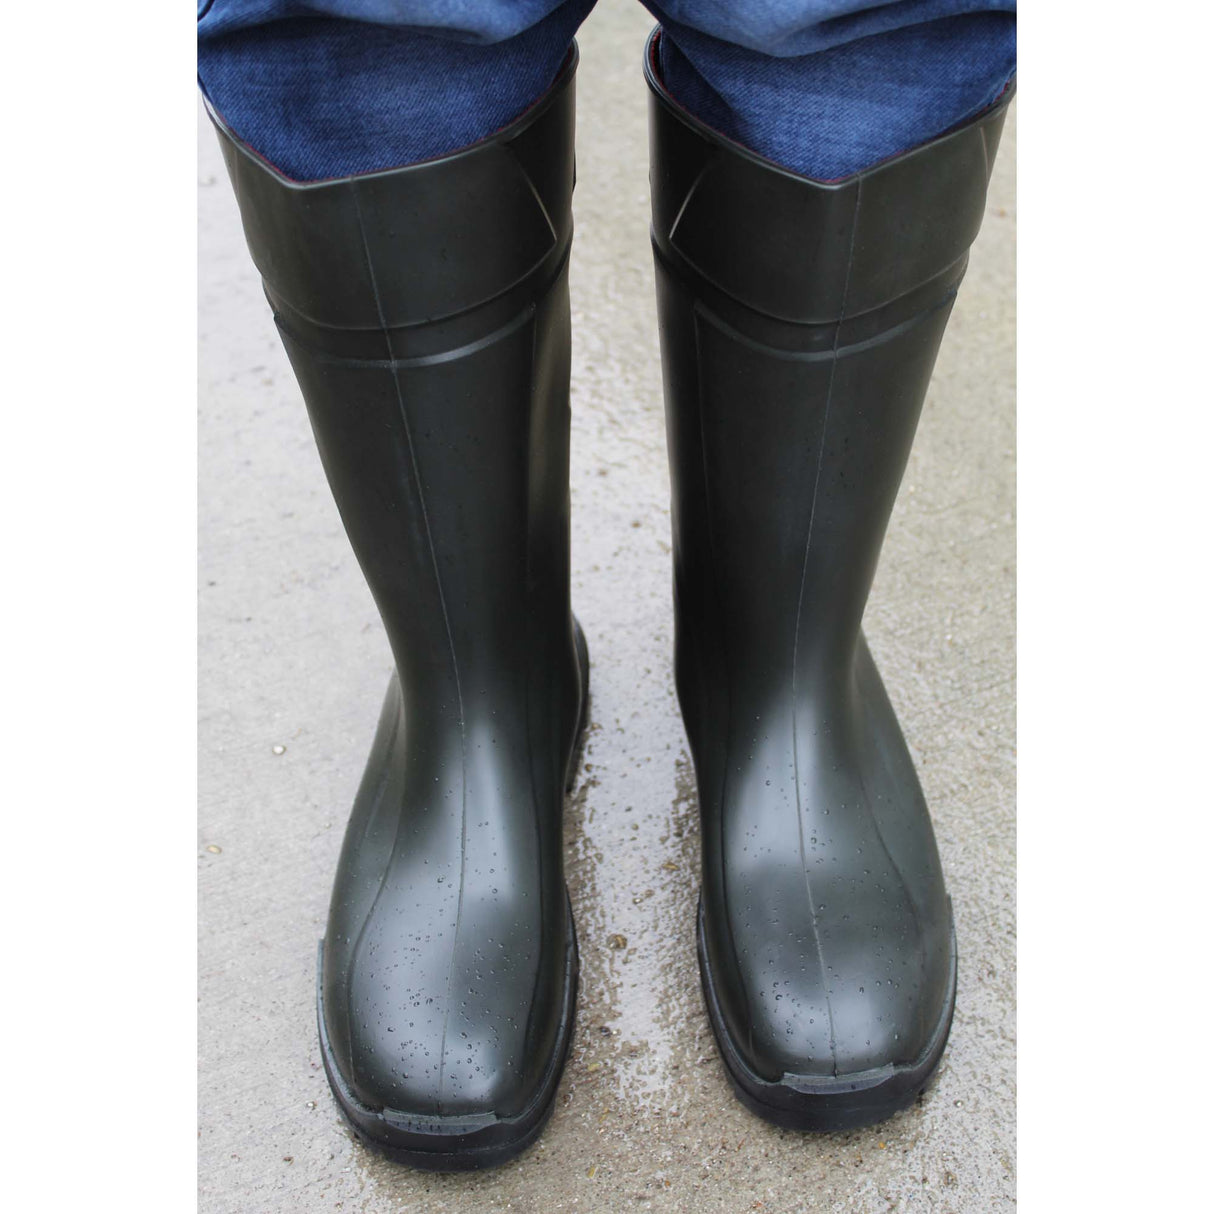 Agritura S5 Thermo Grüne Stiefel – Hohe Qualität für landwirtschaftliche Arbeiten